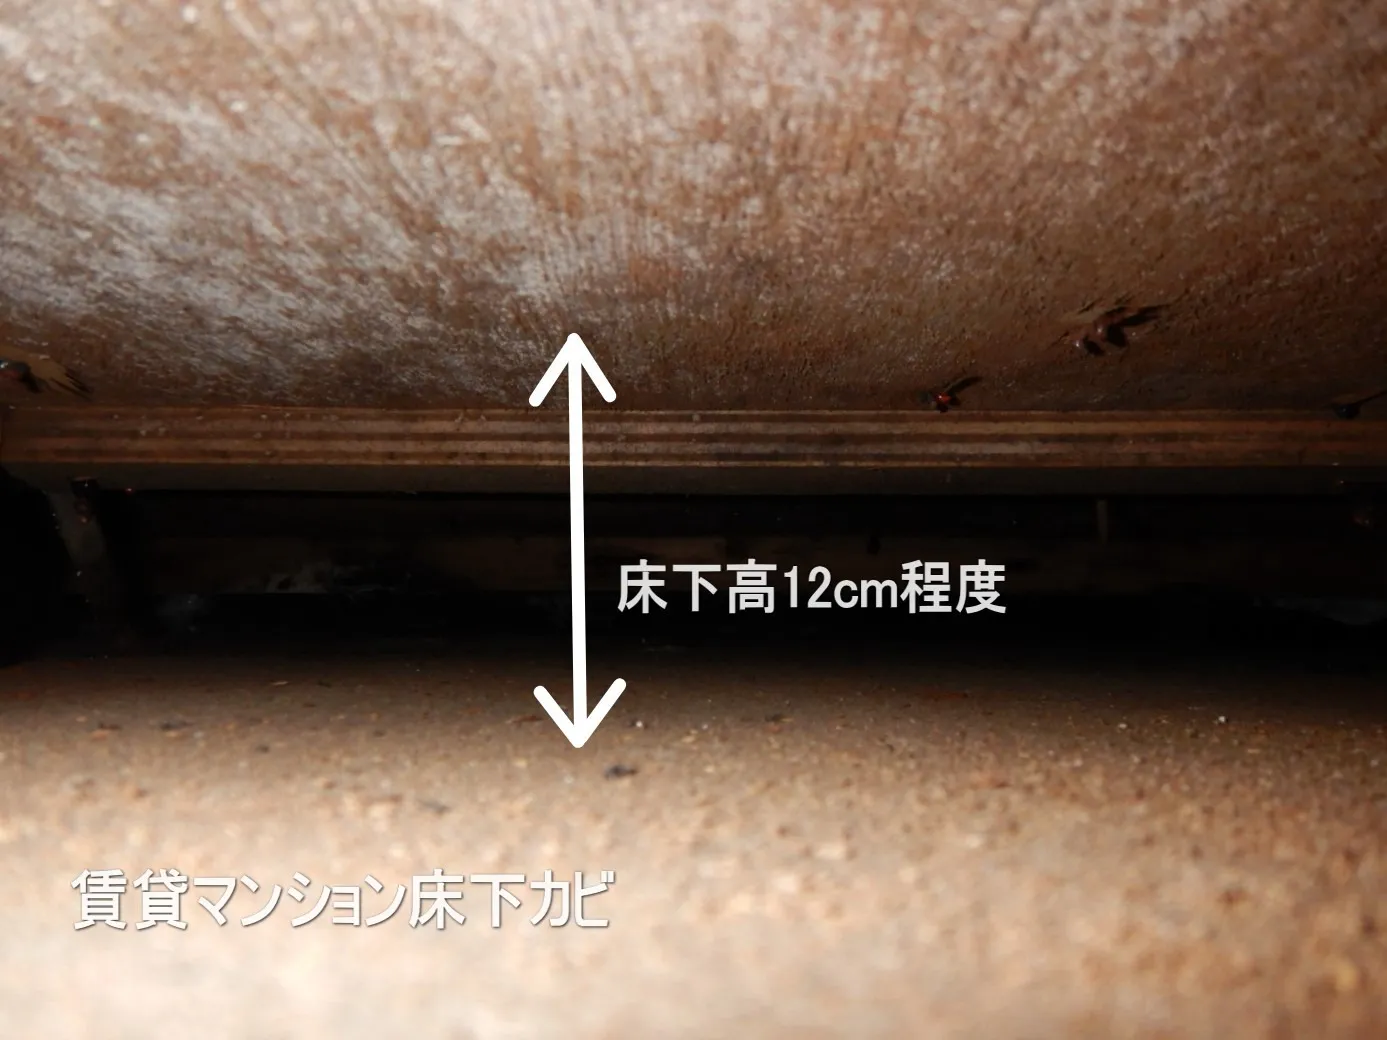 【埼玉・東京】賃貸マンション床下漏水事故は解体し防カビ工事を